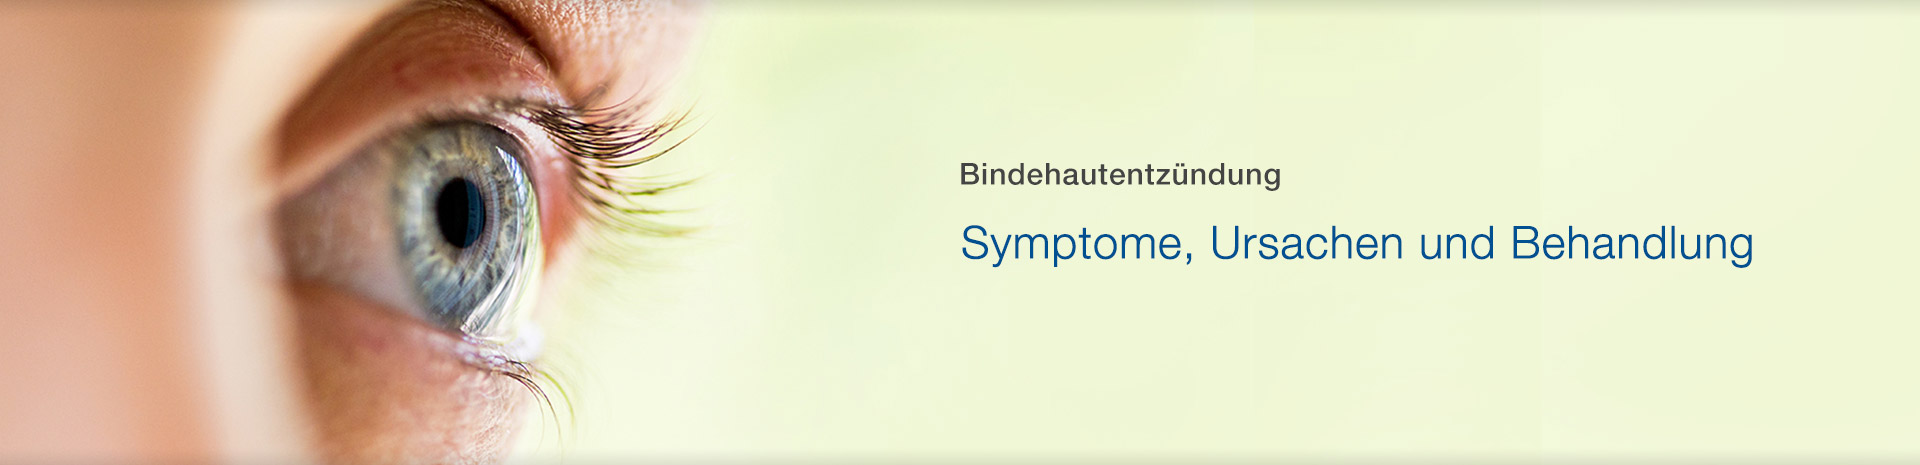 Bindehautentzündung – Symptome, Ursachen und Behandlung